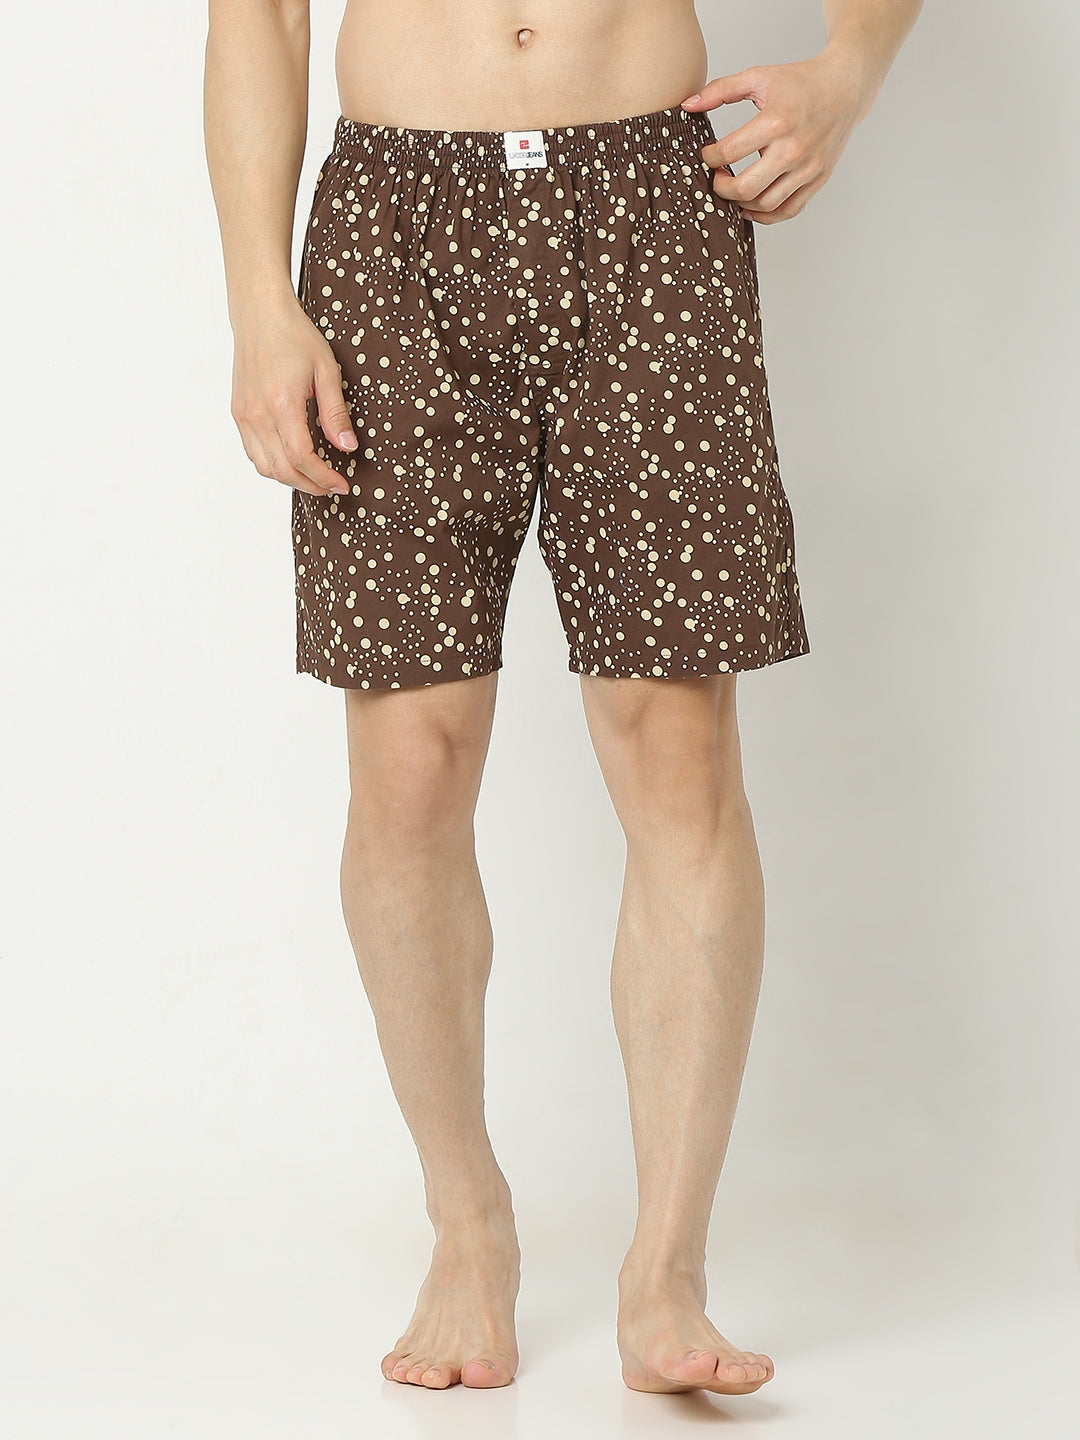 Men Premium Cotton Boxer Shorts- UnderJeans by Spykar